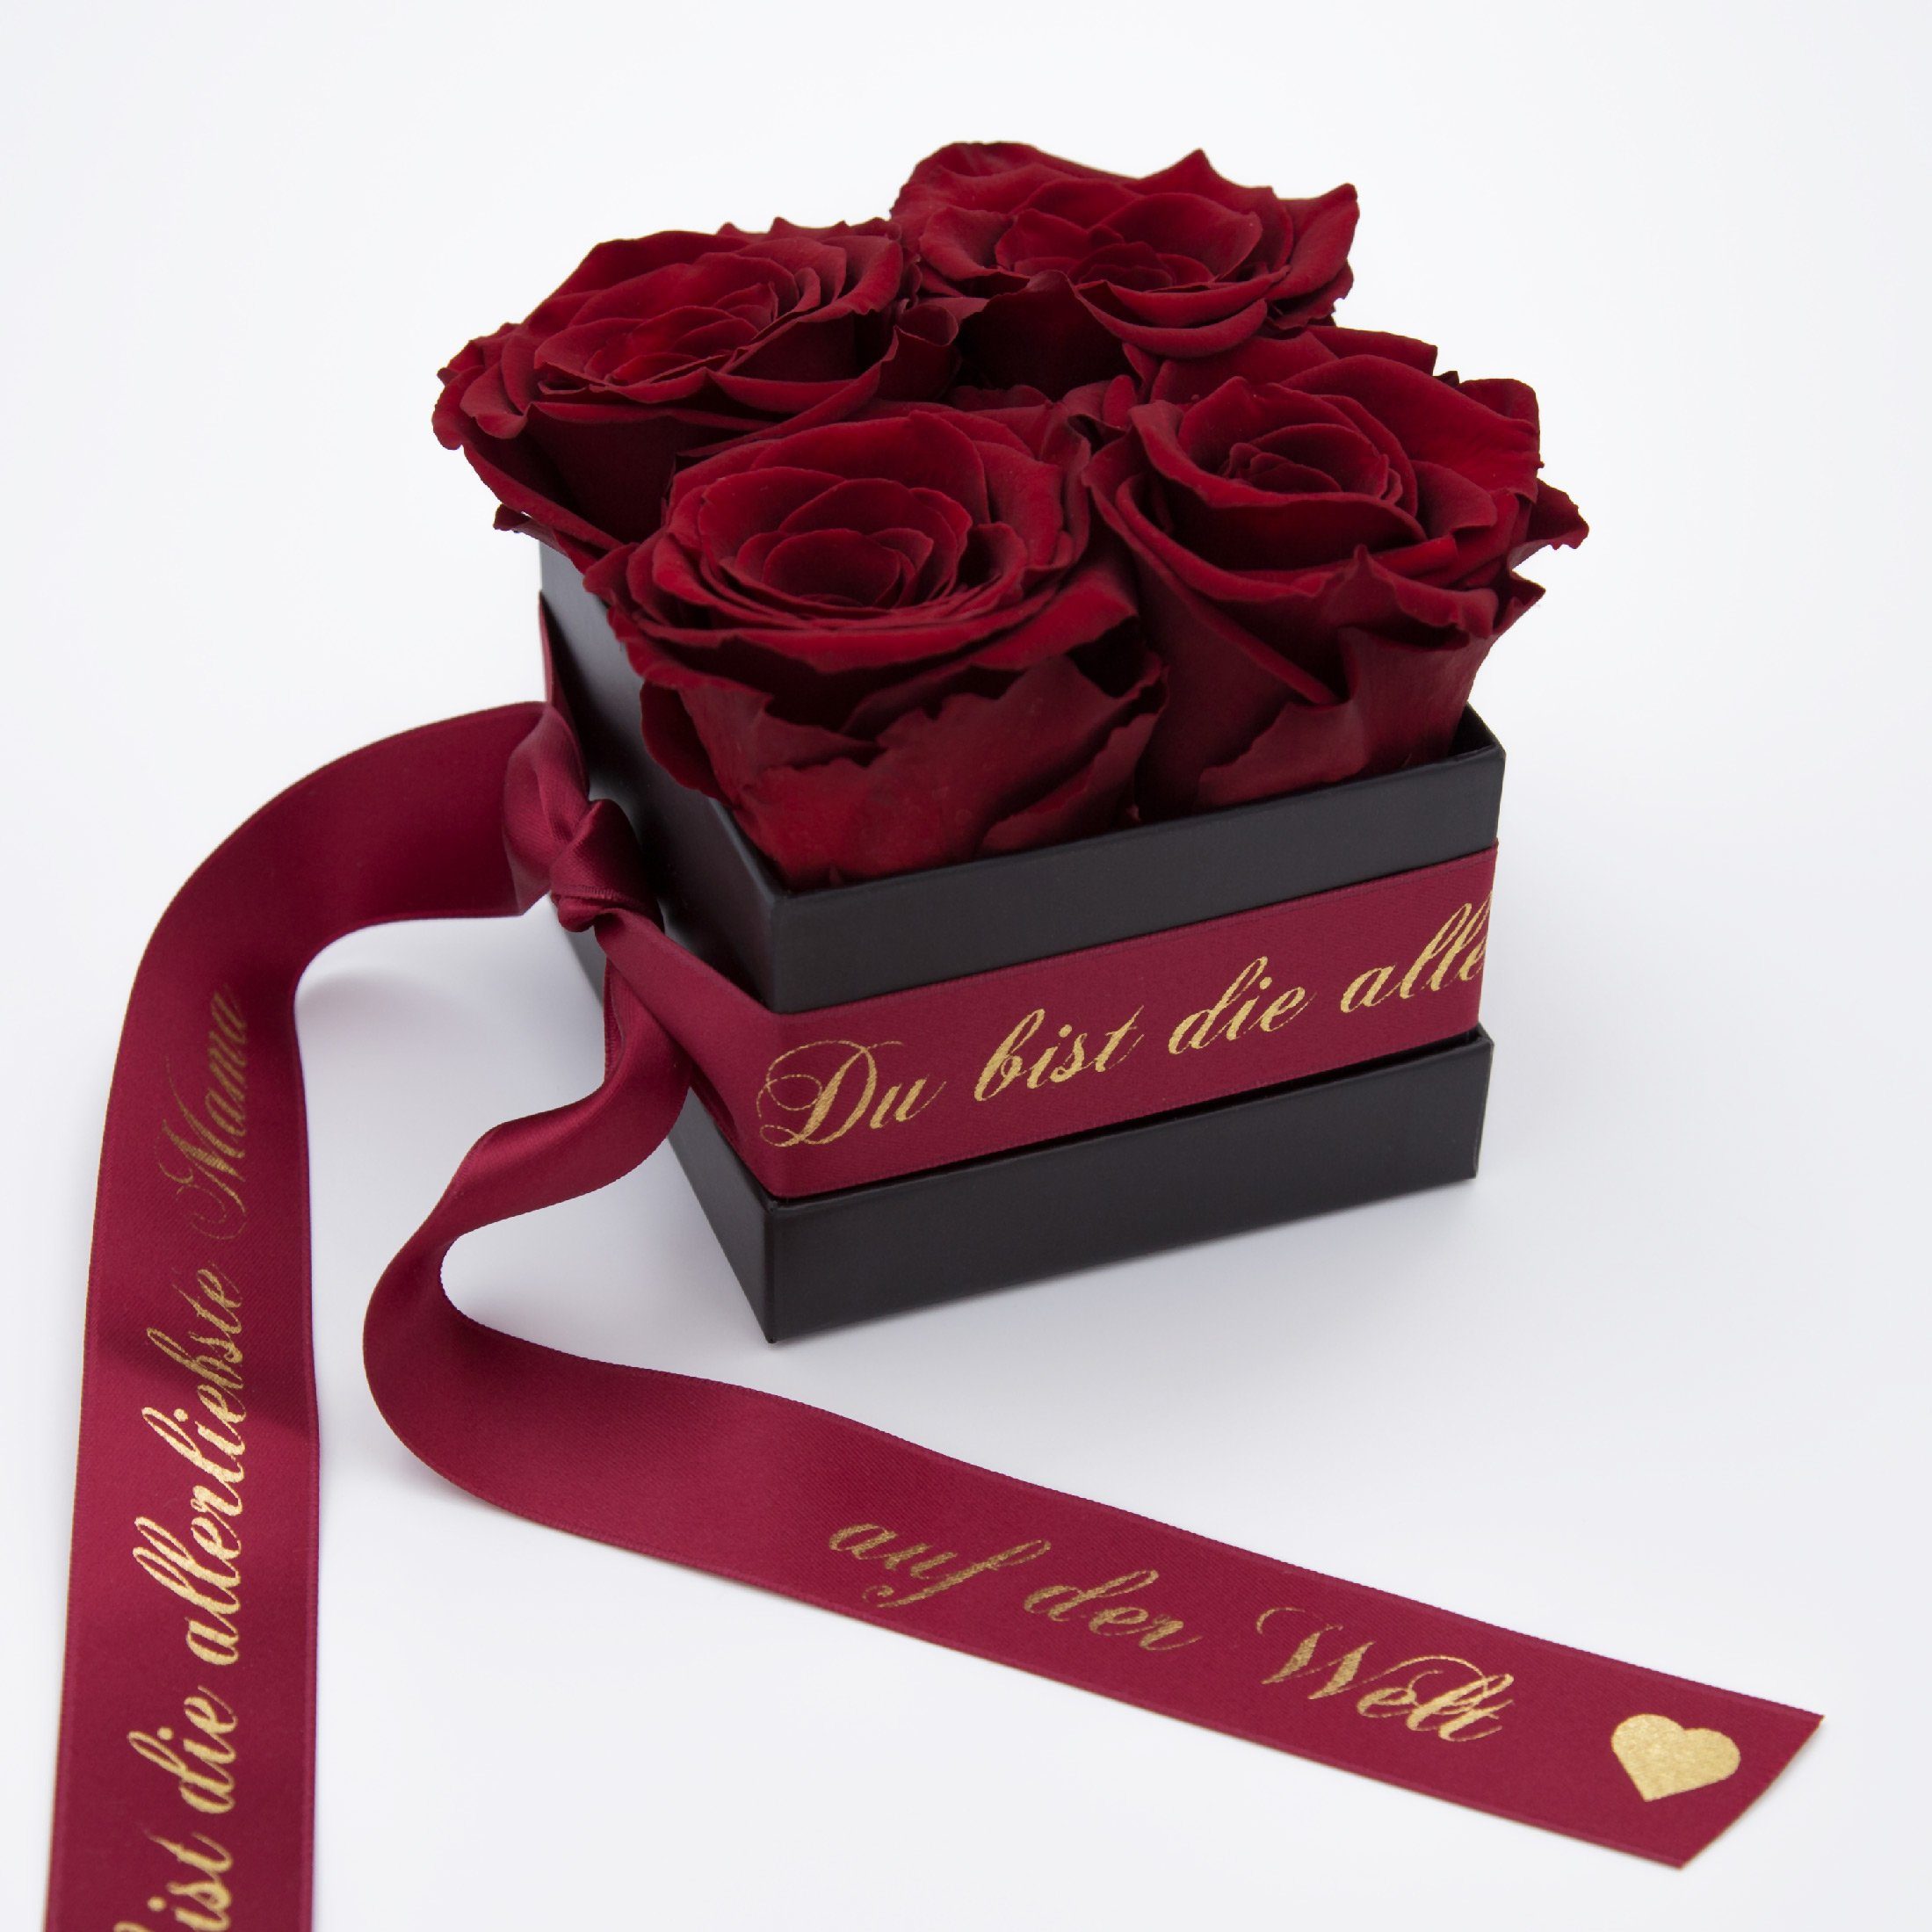 Geschenk Kunstblume Rosen Echte der Allerliebste 4 konservierte 3 Rosenbox Höhe Rosen haltbar cm, 8,5 Welt Jahre Mama Rose, auf Burgundy SCHULZ ROSEMARIE Heidelberg,